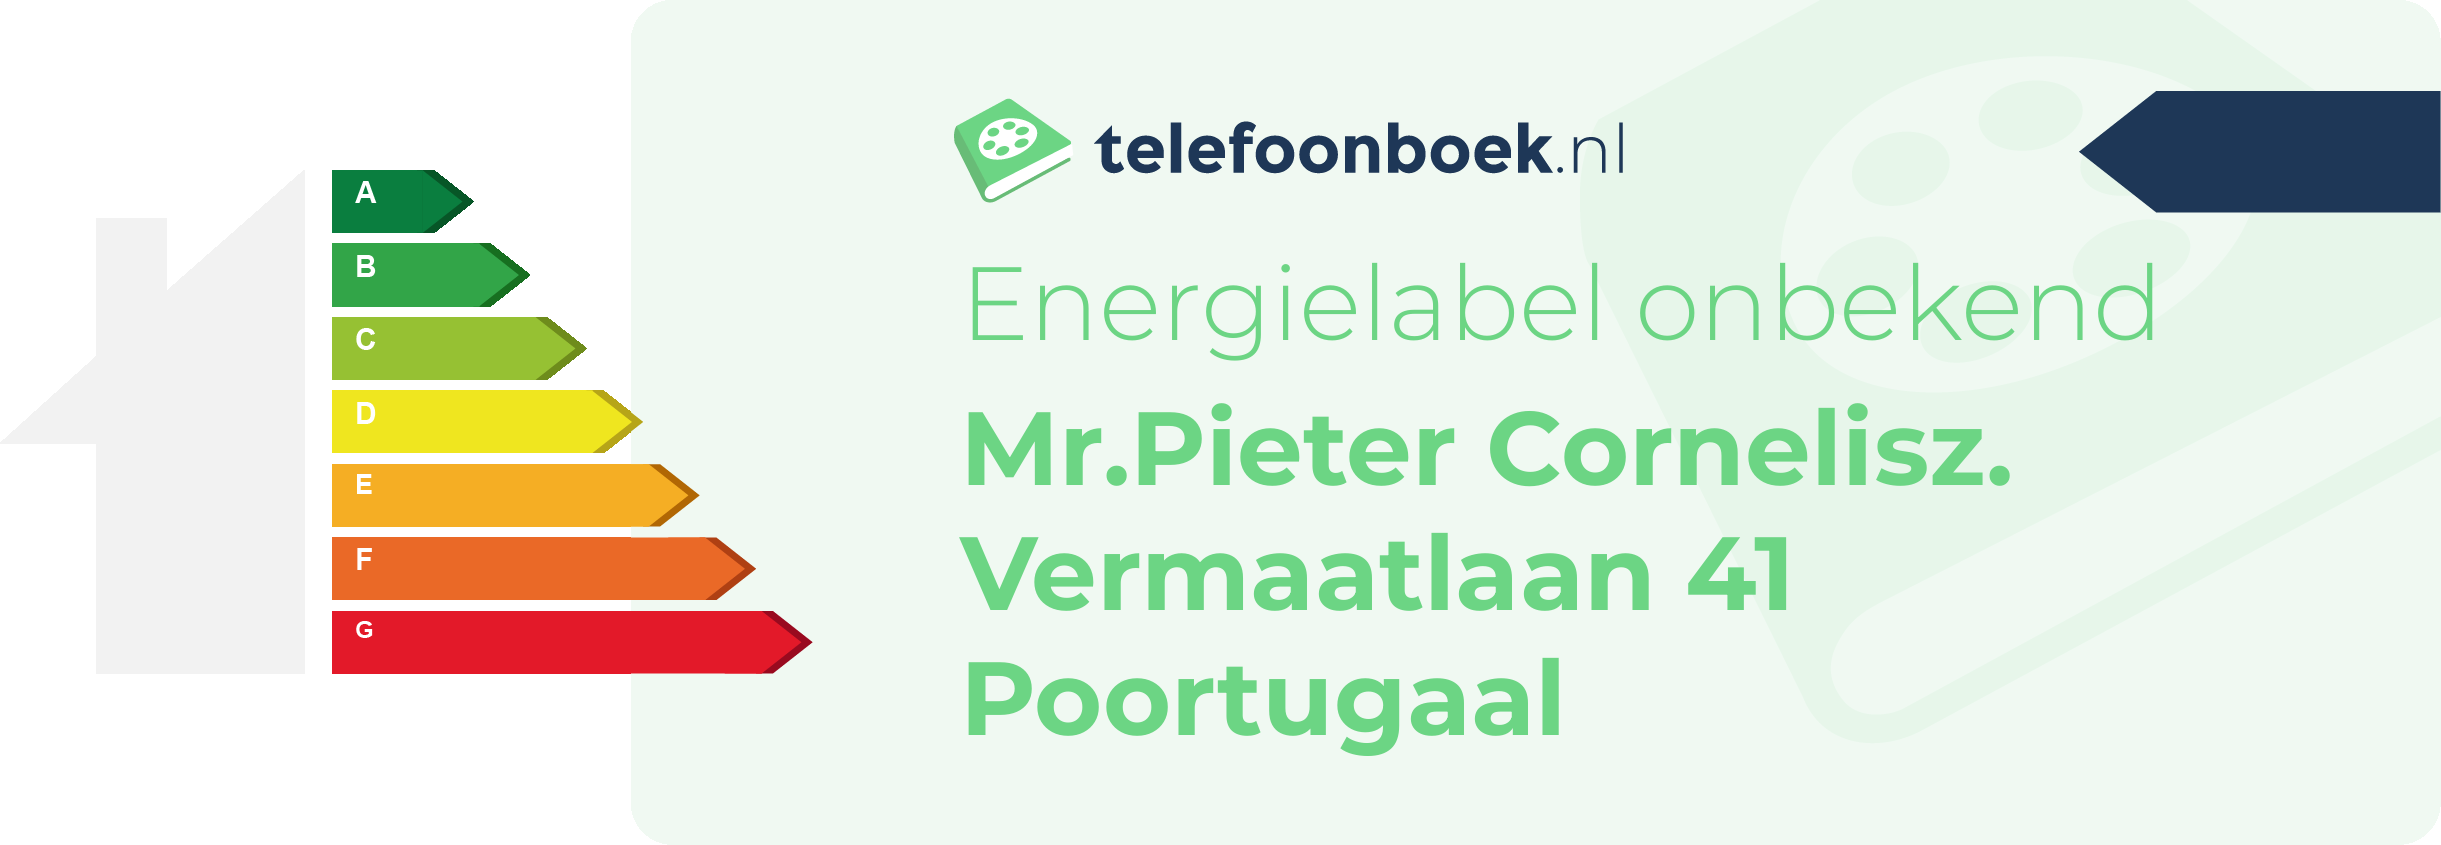 Energielabel Mr.Pieter Cornelisz. Vermaatlaan 41 Poortugaal